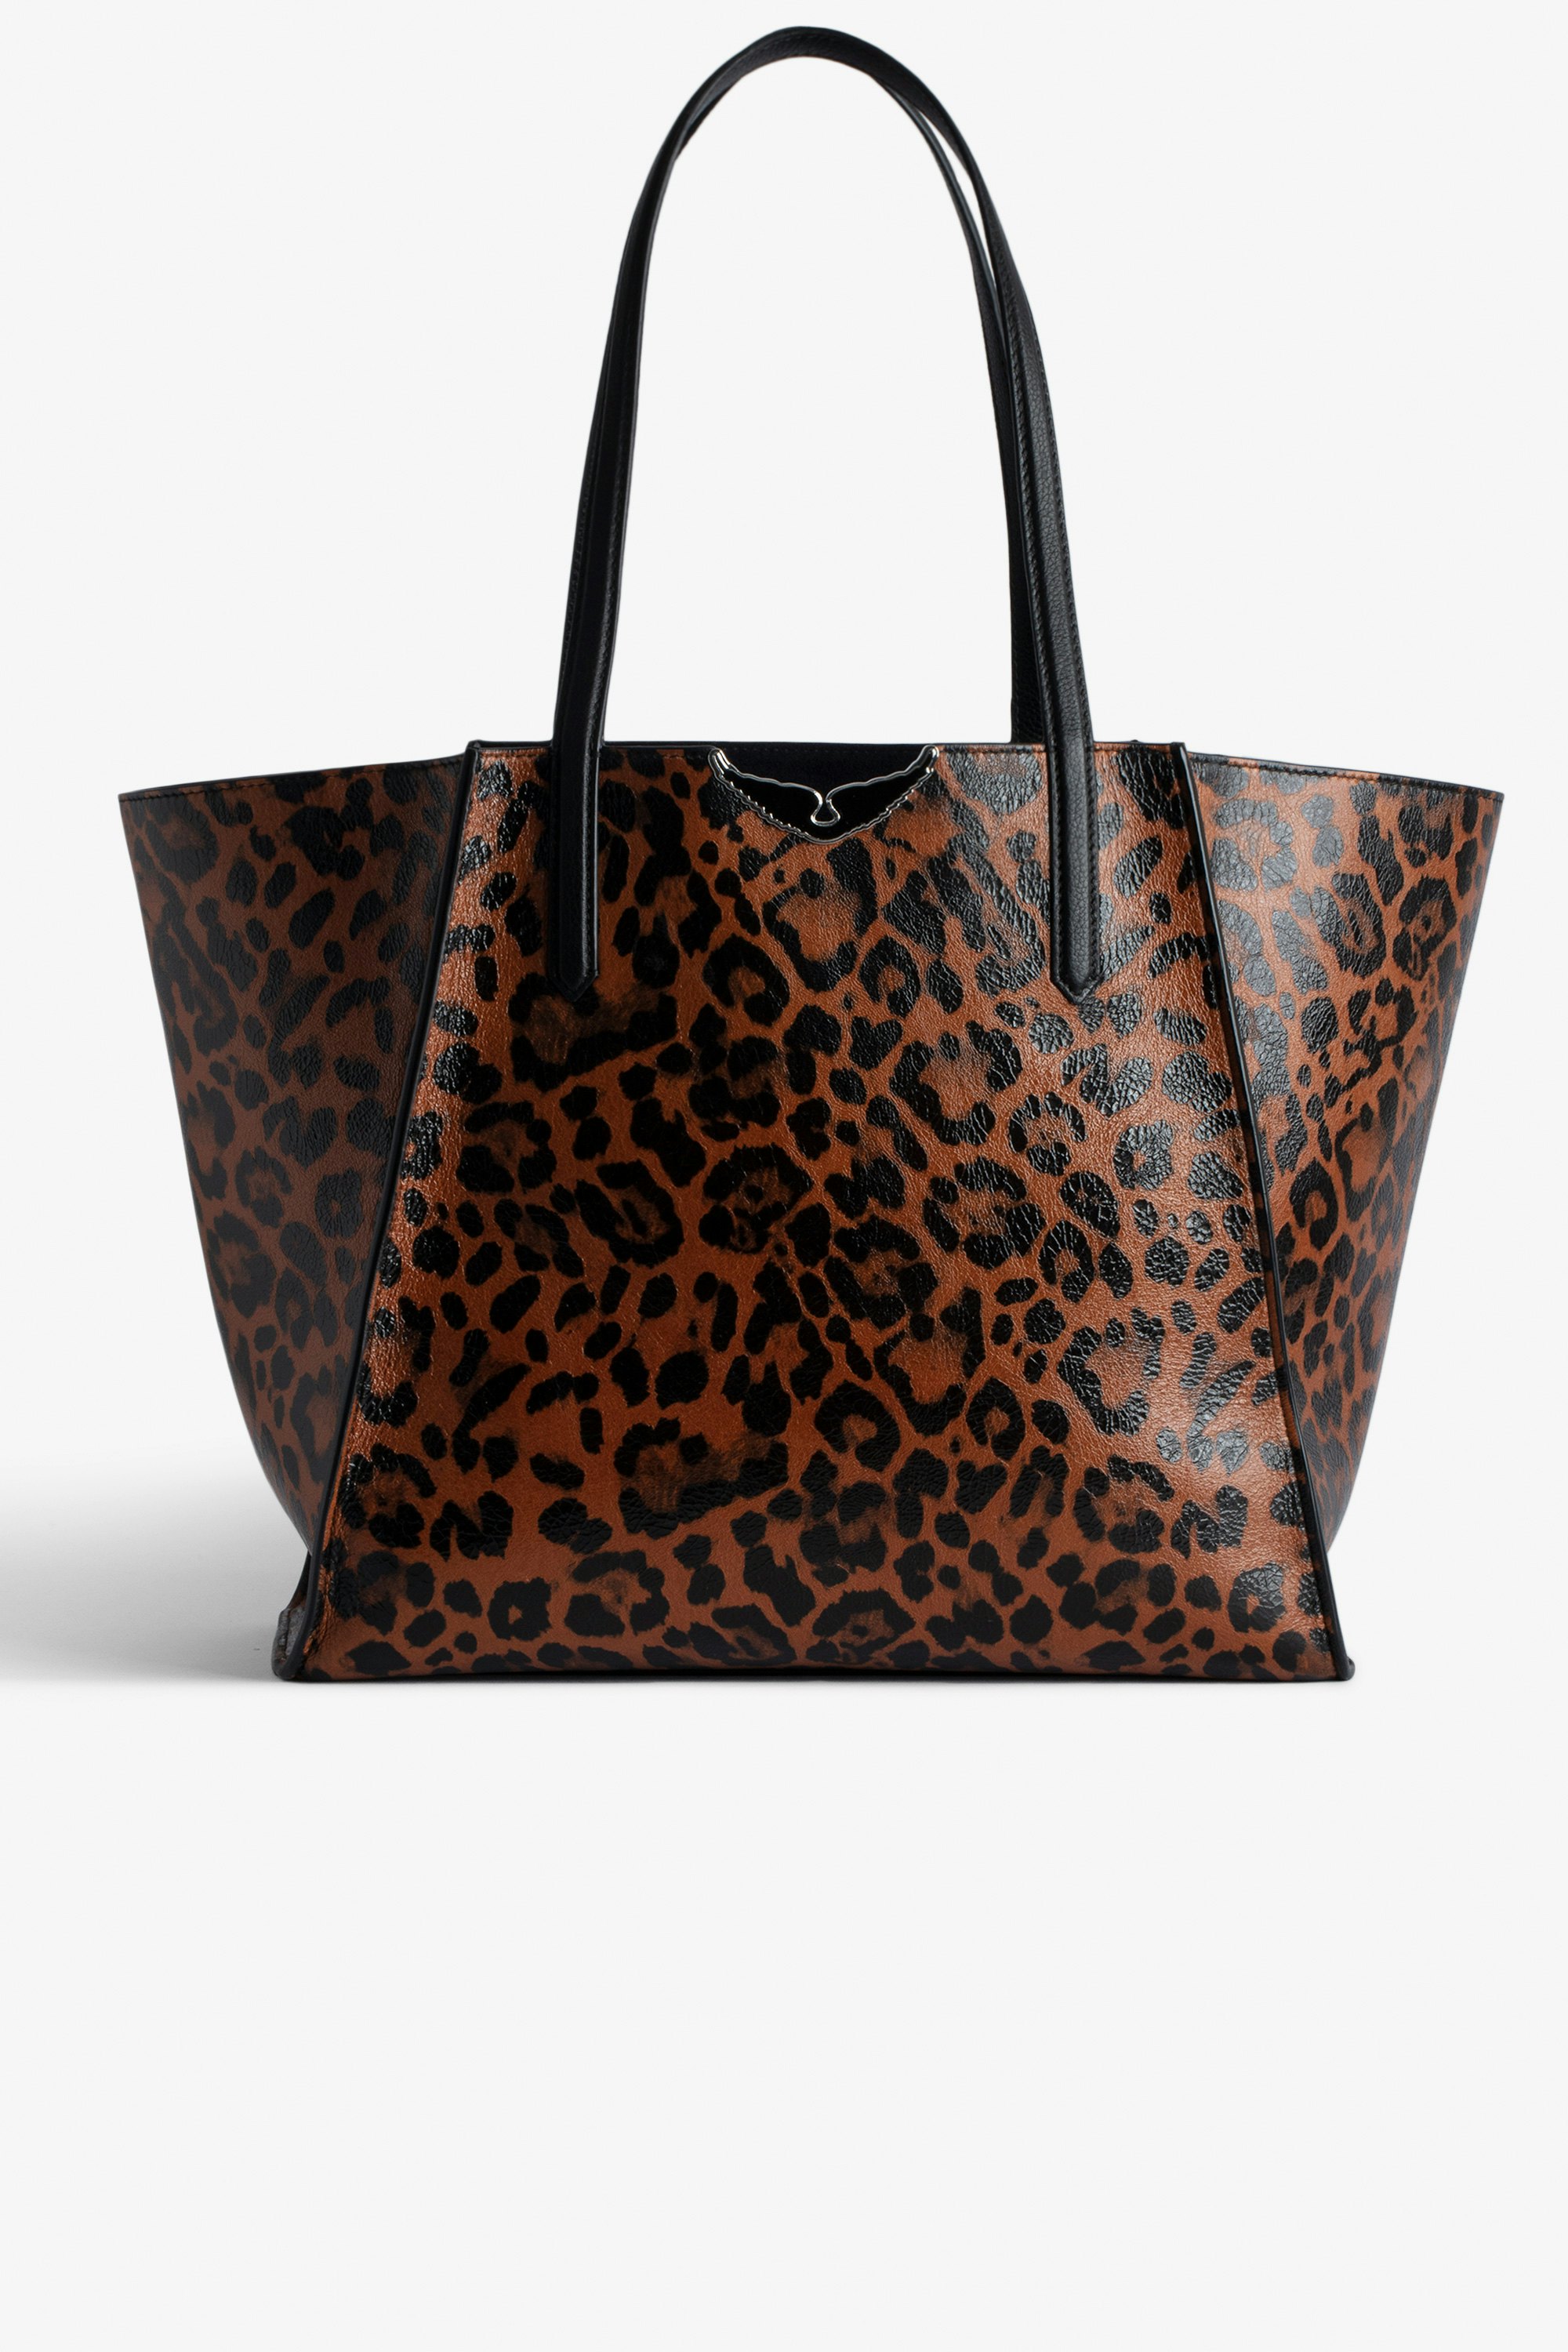 Sac Le Borderline Léopard Sac cabas réversible en cuir brillant marron imprimé léopard à anse et ailes en métal femme.